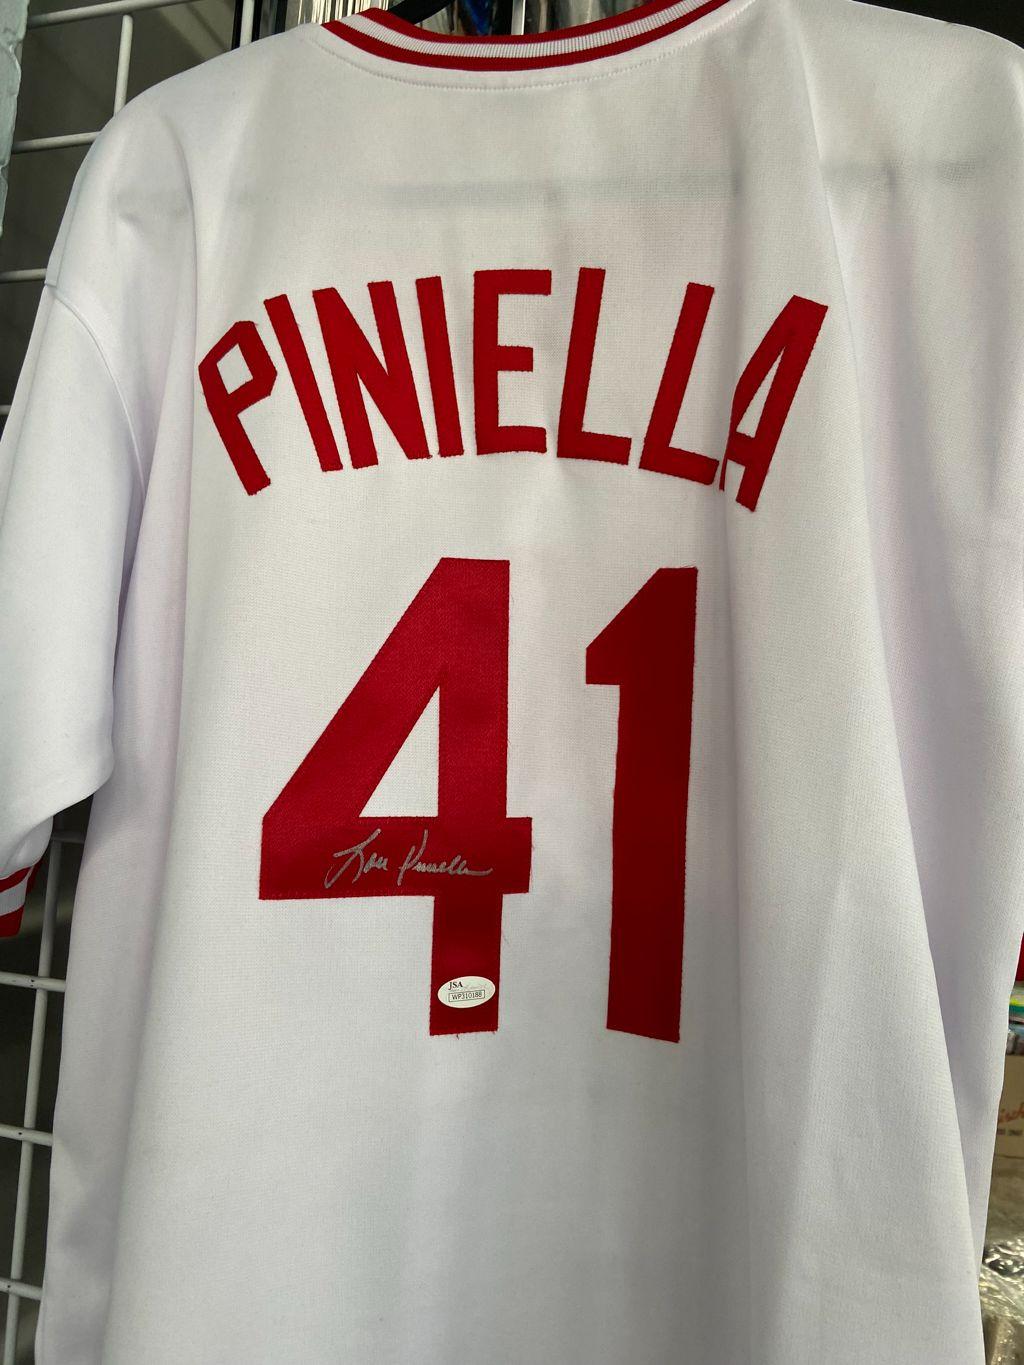 Lou Pinella Signed Jersey